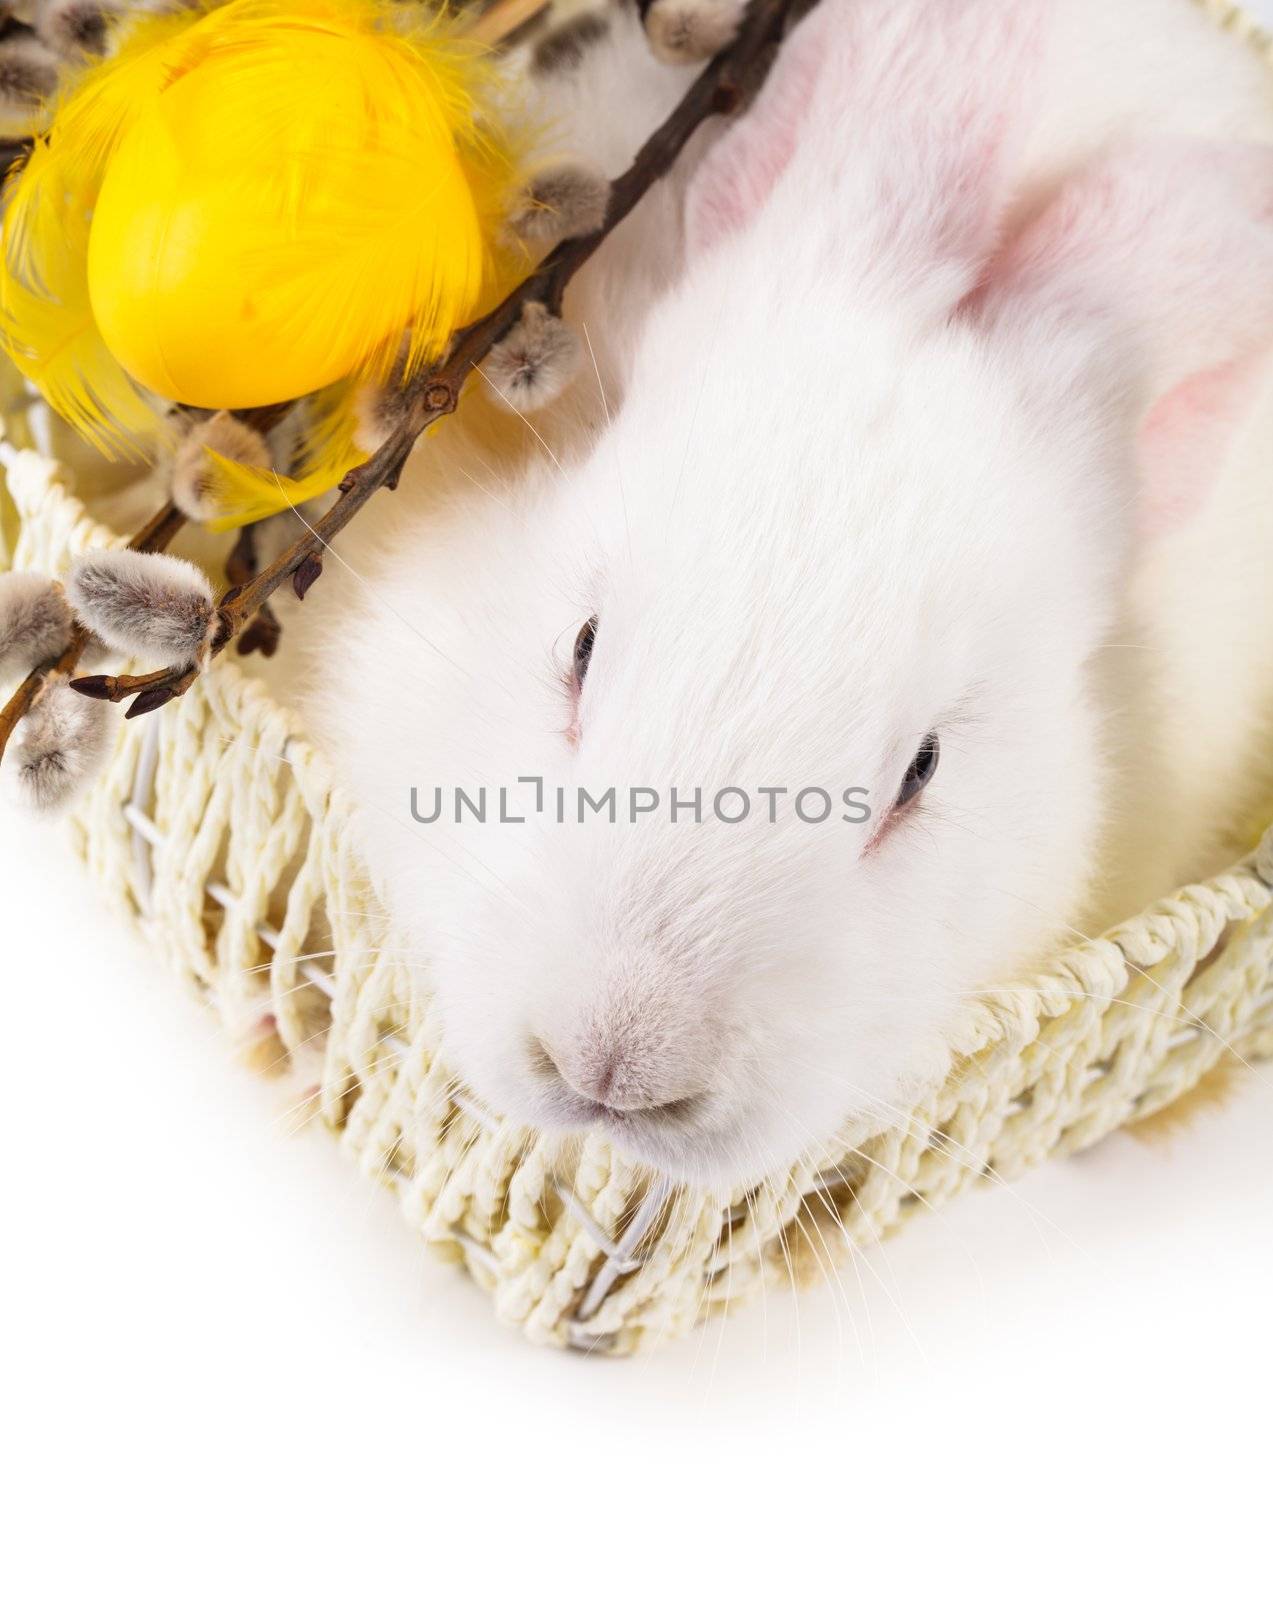 Rabbit in a basket by oksix